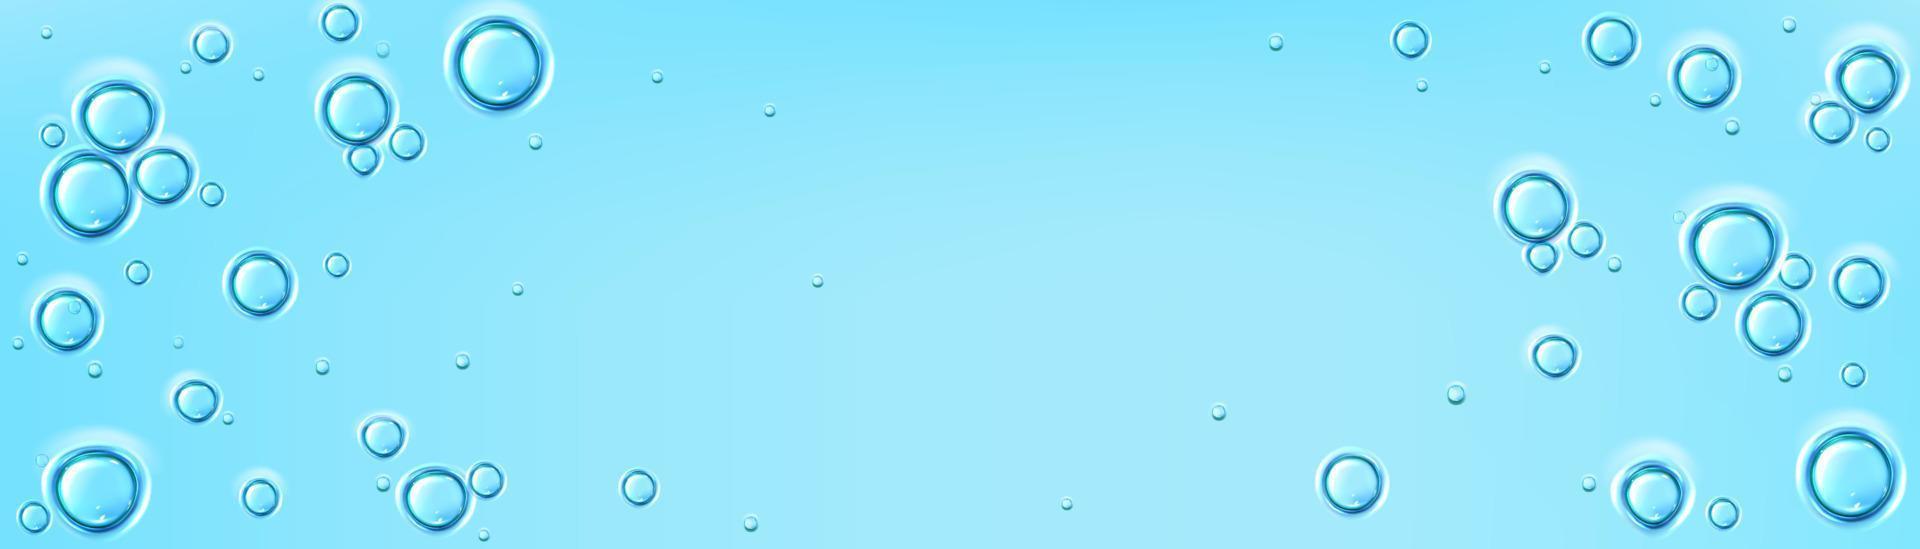 superfície de água azul com bolhas, soro líquido vetor